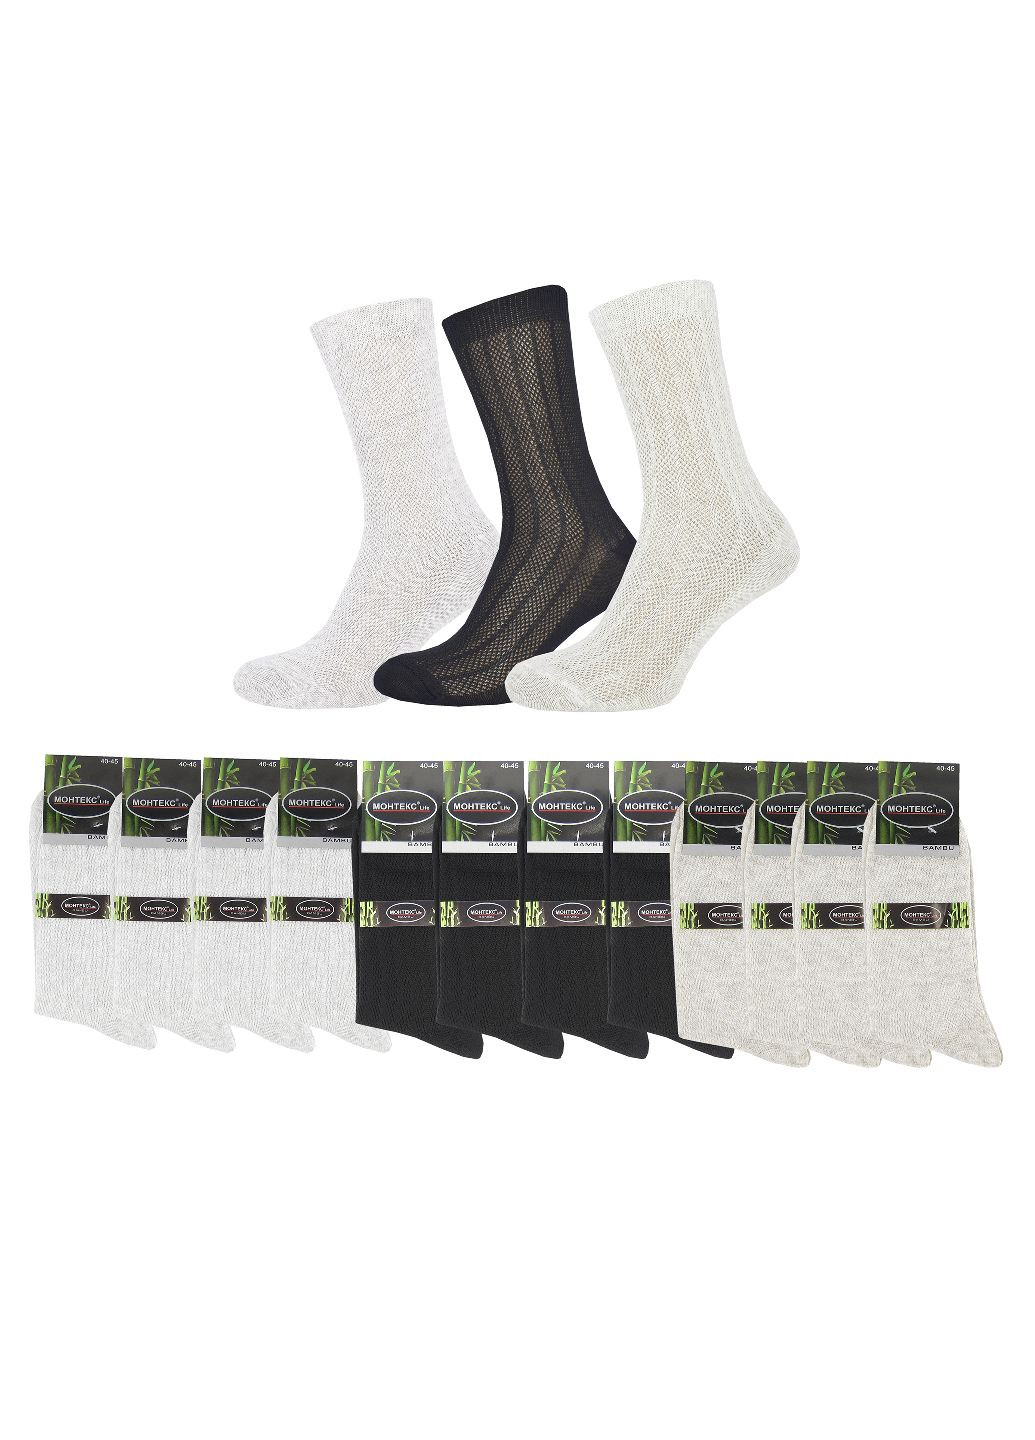 Летние мужские носки с сеткой (12 пар) Монтекс однотонные комбинированные повседневные